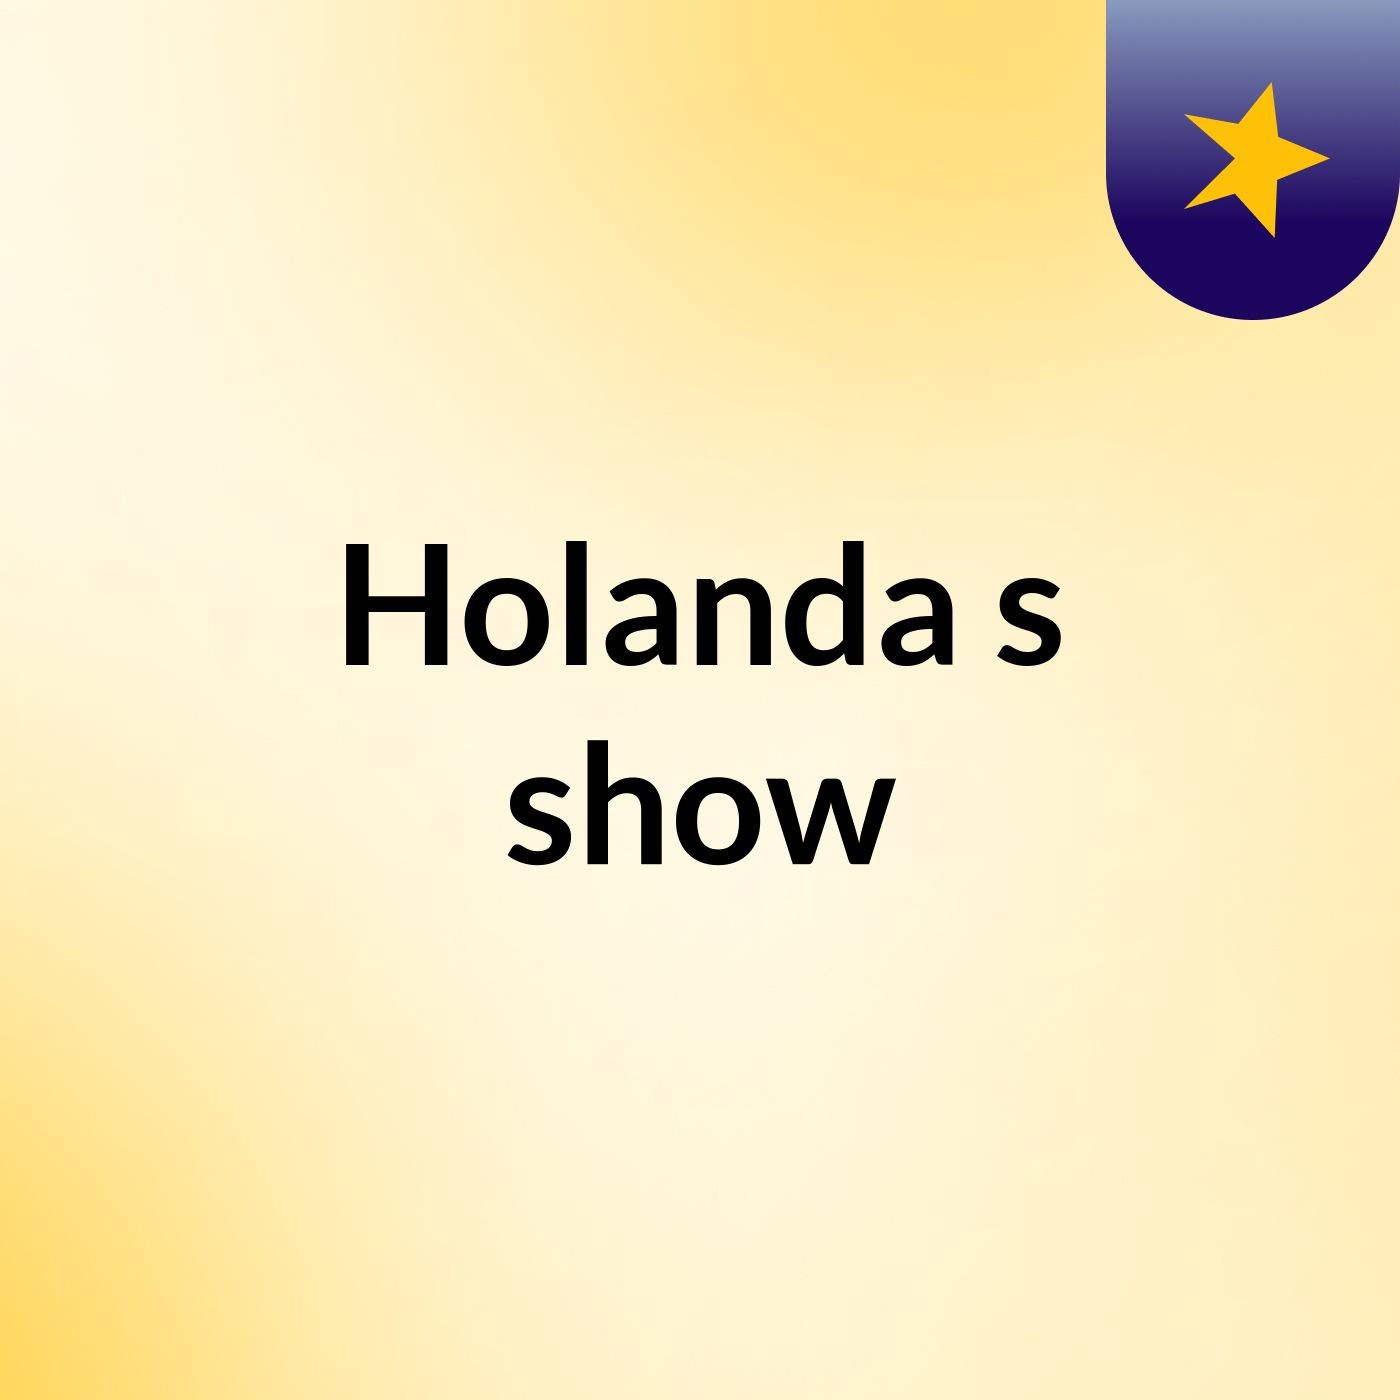 Holanda's show